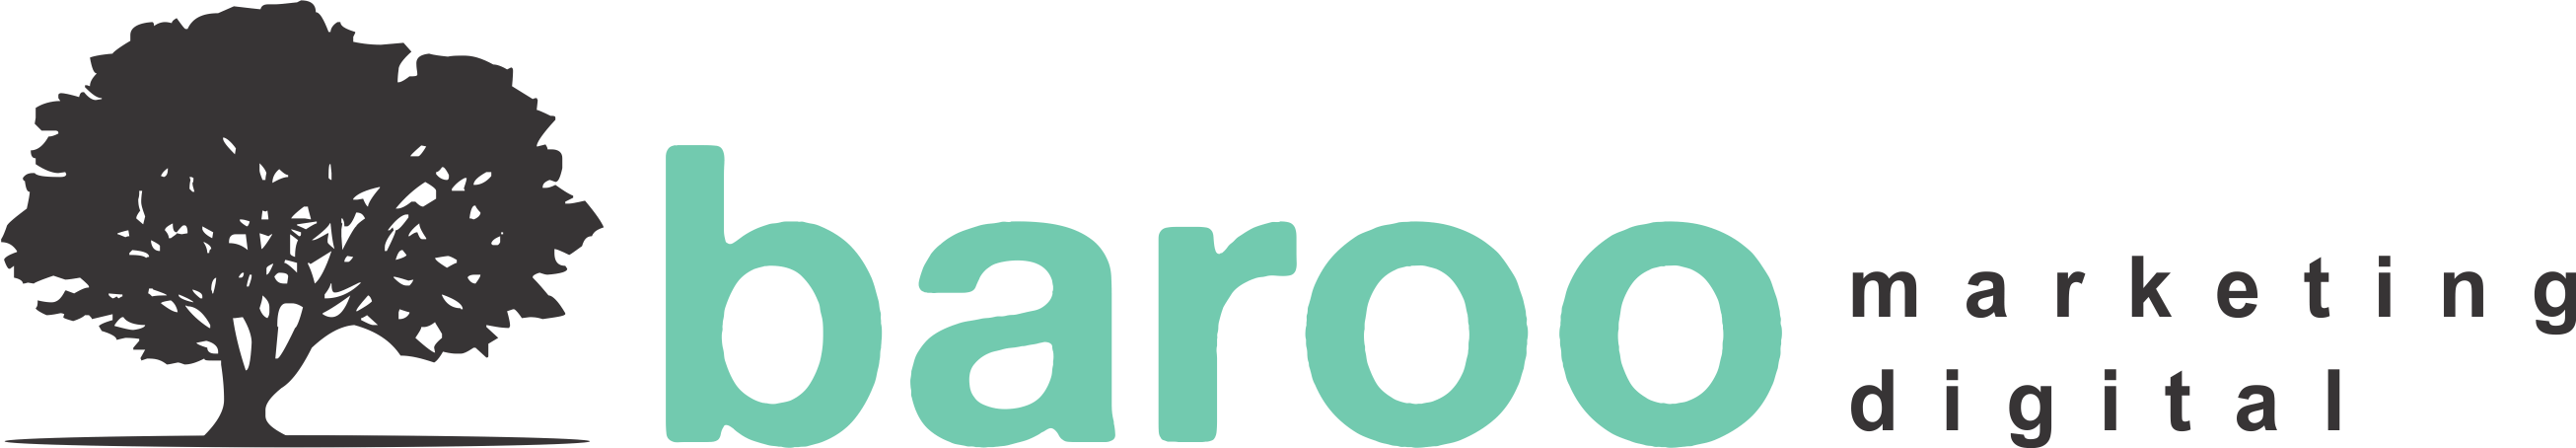 logomarca-baroo-marketing-digital